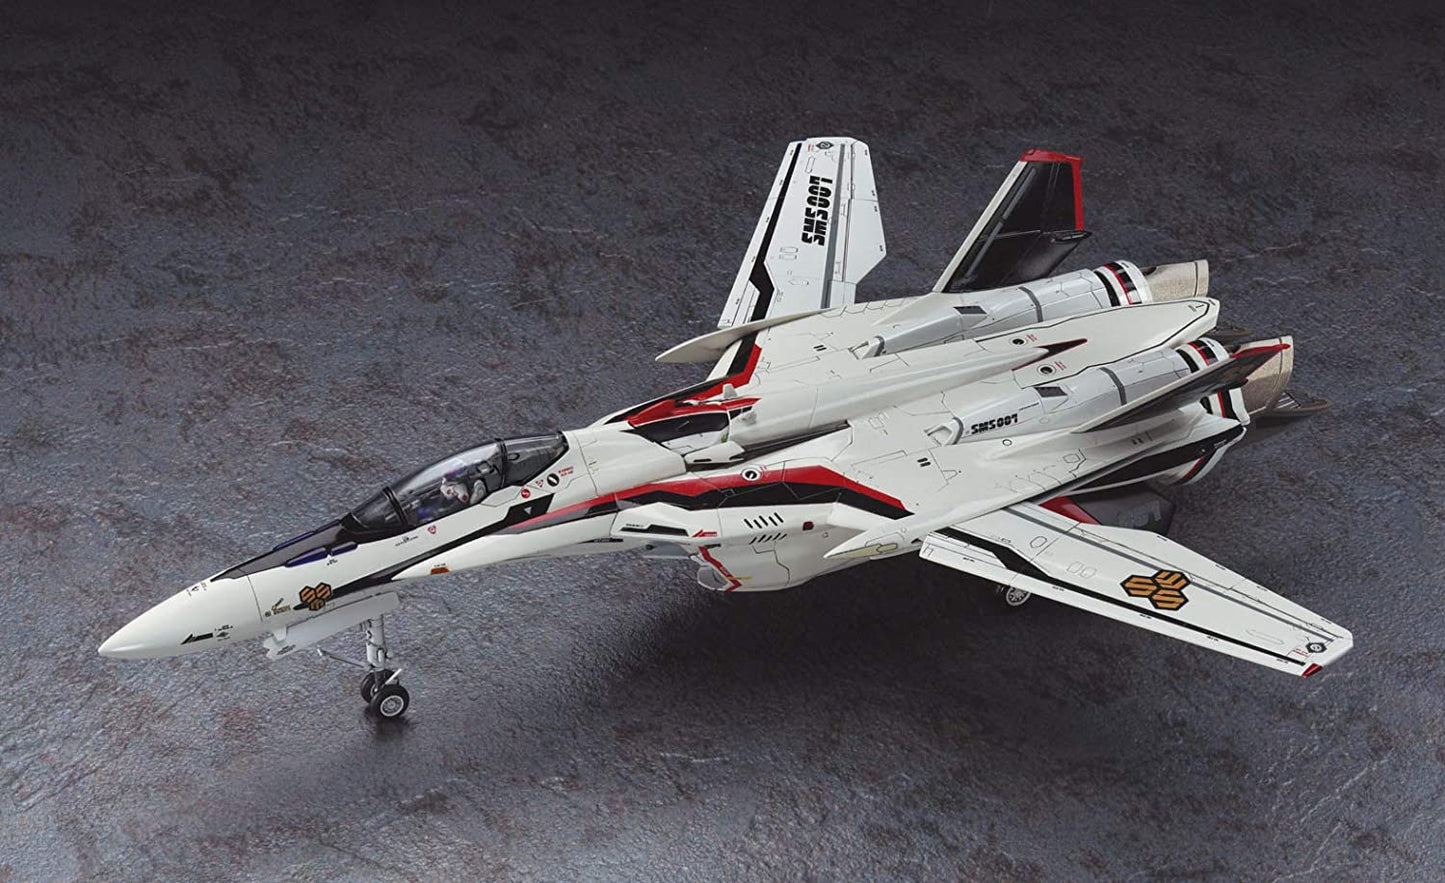 Macross Frontier 1/72 Scale VF-25F/S Messiah Fighter Model Kit